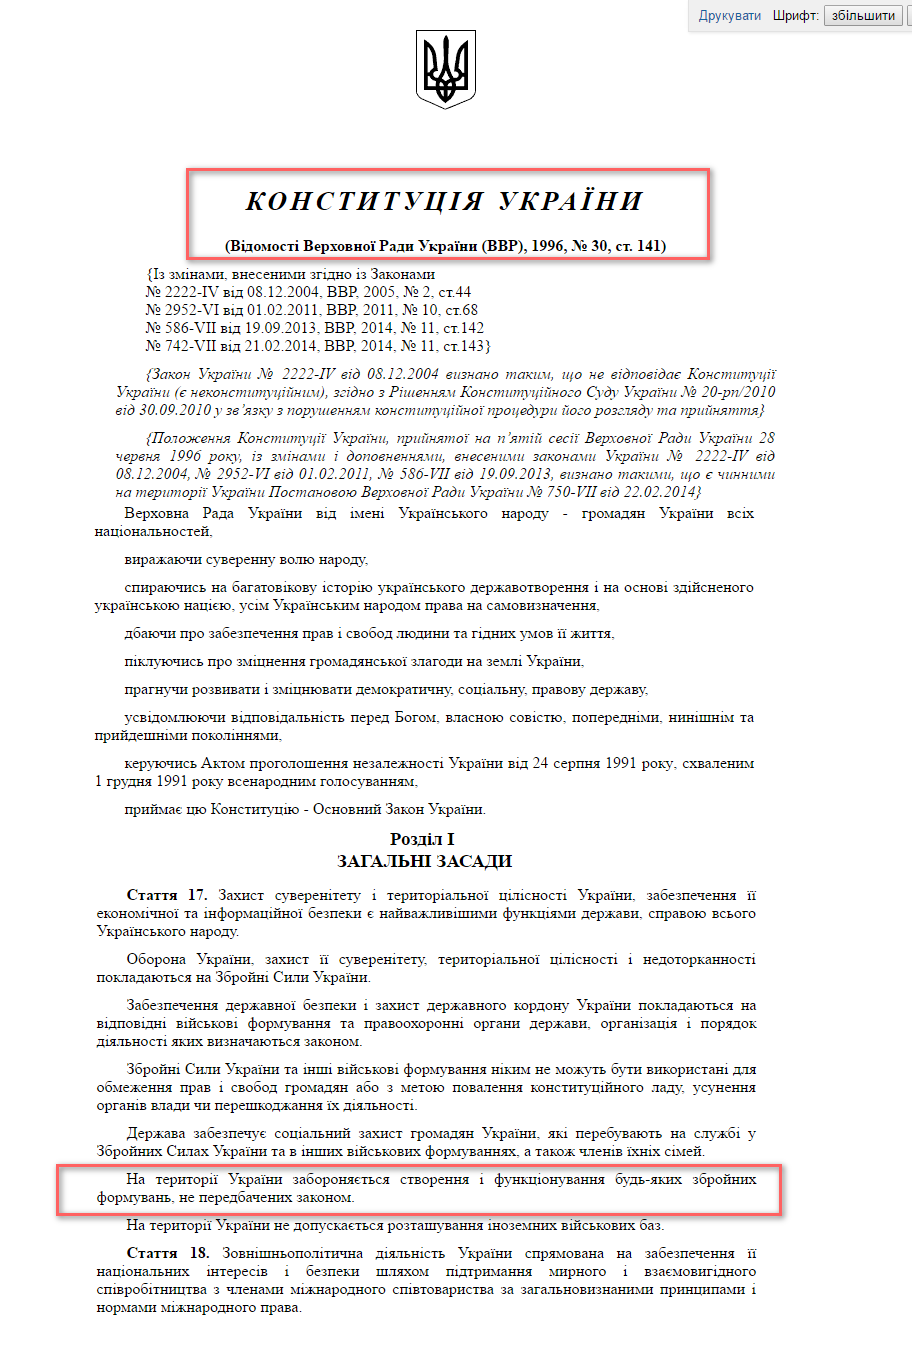 http://zakon3.rada.gov.ua/laws/show/254%D0%BA/96-%D0%B2%D1%80/print1452763325947214